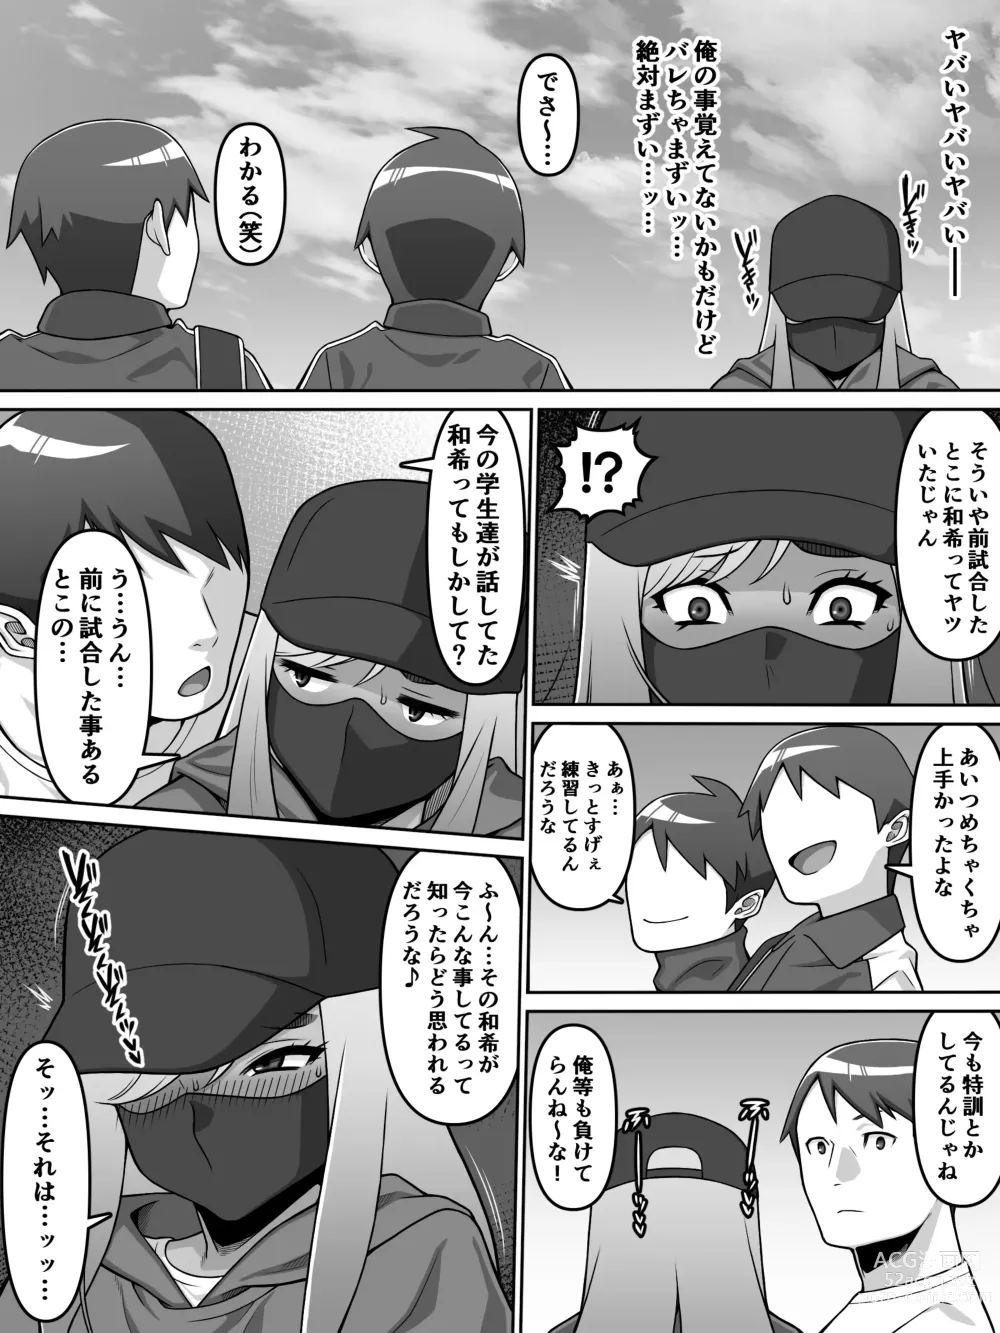 Page 77 of doujinshi Oi Ai